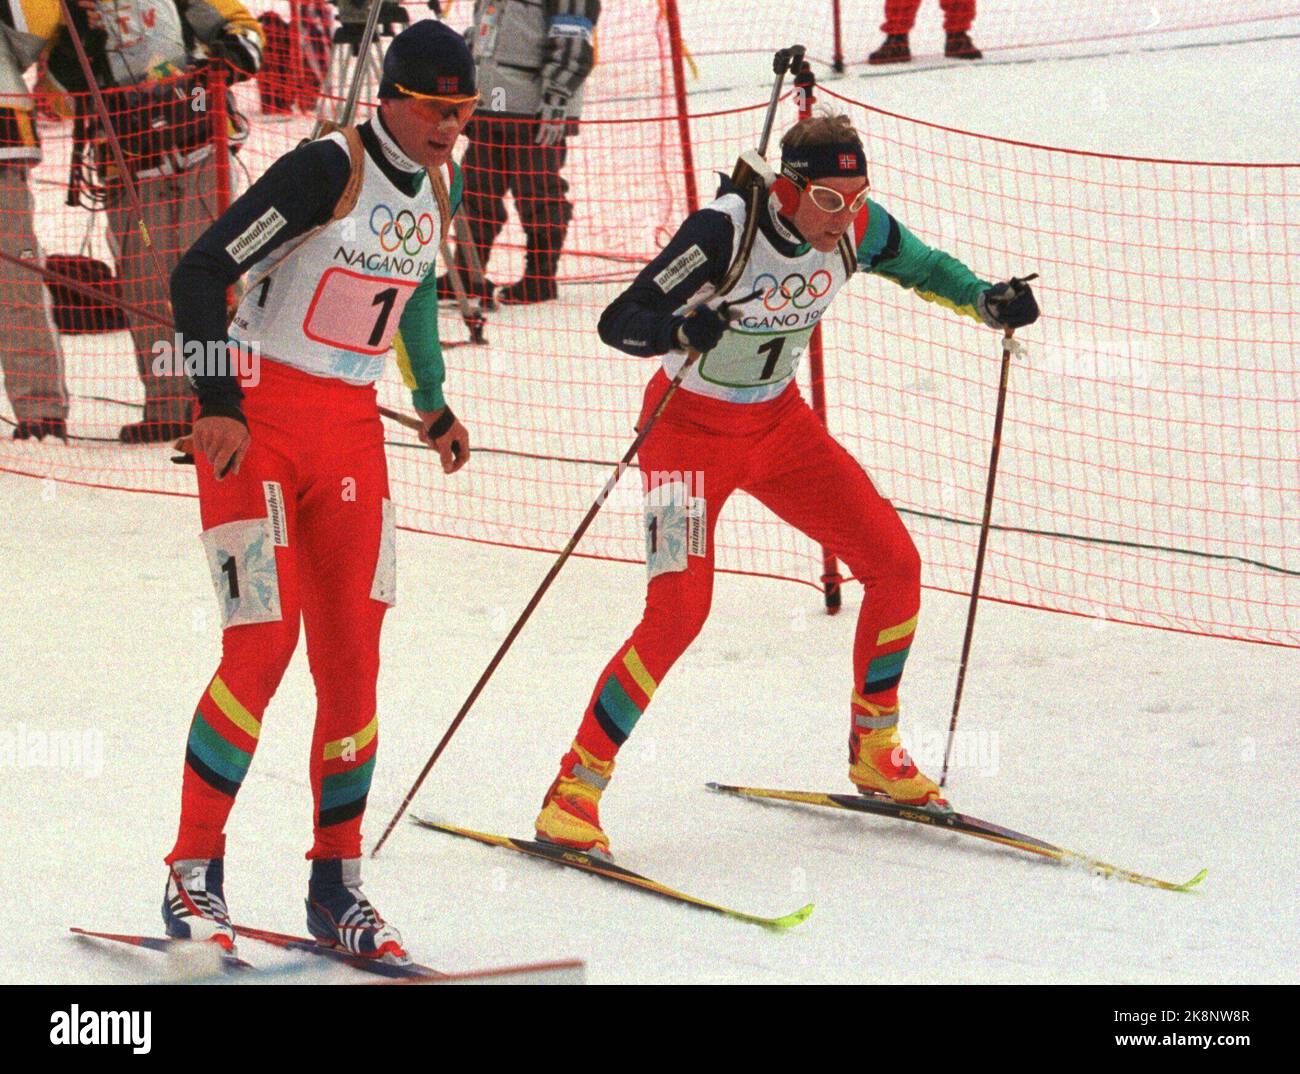 OL NAGANO 199802: Egil Gjelland wechselt während der Biathlon-Staffel mit Halvard Hanevold. Austausch. Norwegen nahm Silber. Scan-Foto: Gunnar Lier Stockfoto